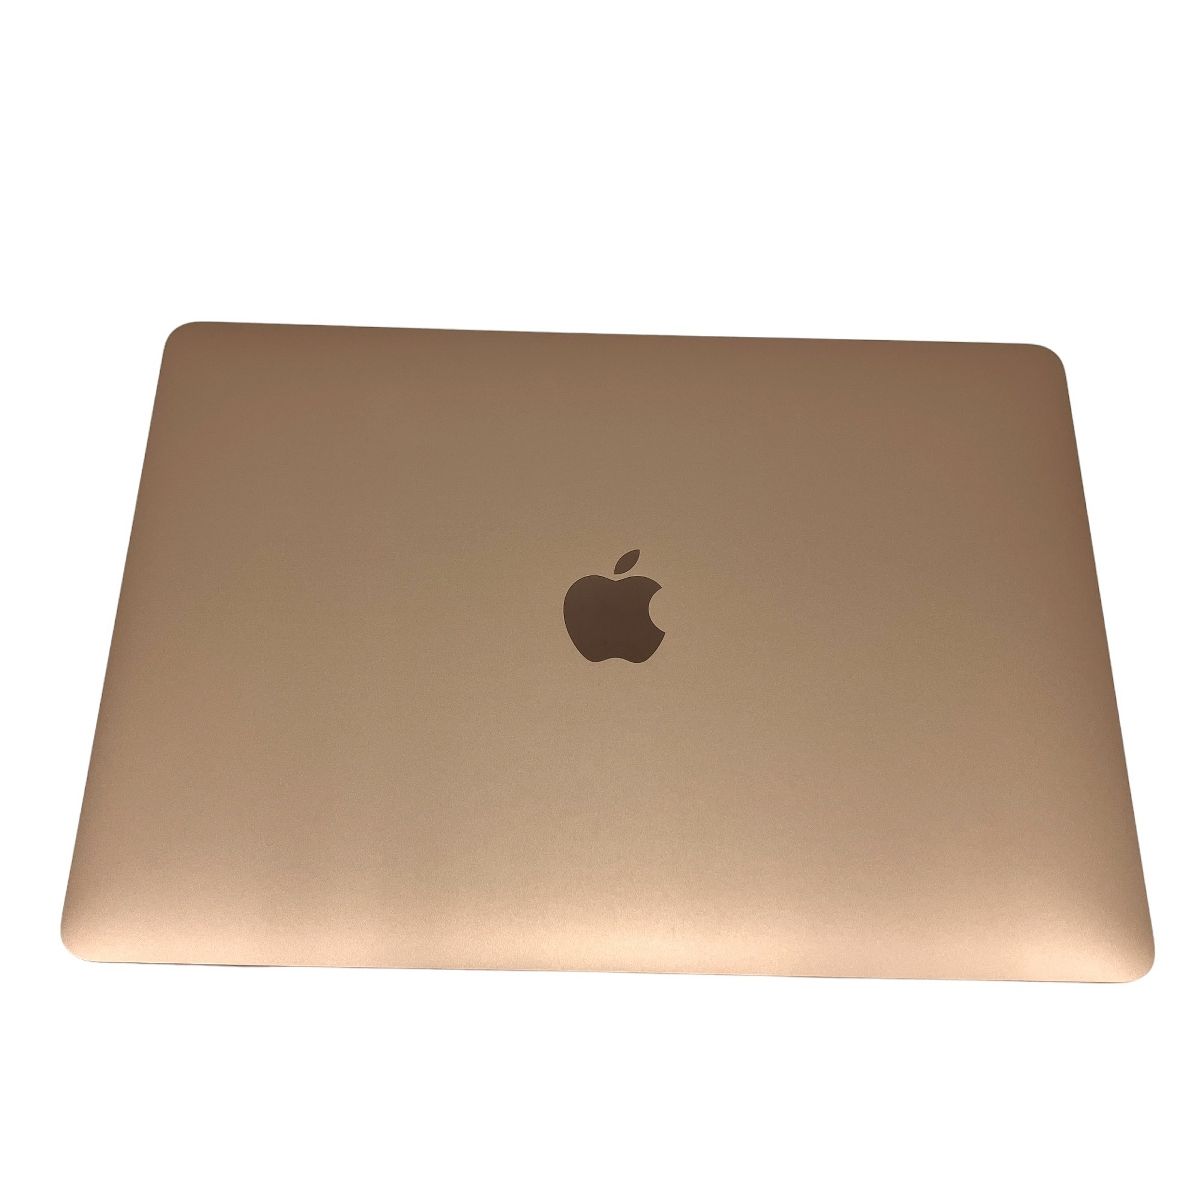 充放電回数 76回】 Apple MacBook Air M1 2020 ノート パソコン 16GB SSD 512GB Sonoma 中古  M8908938 - メルカリ